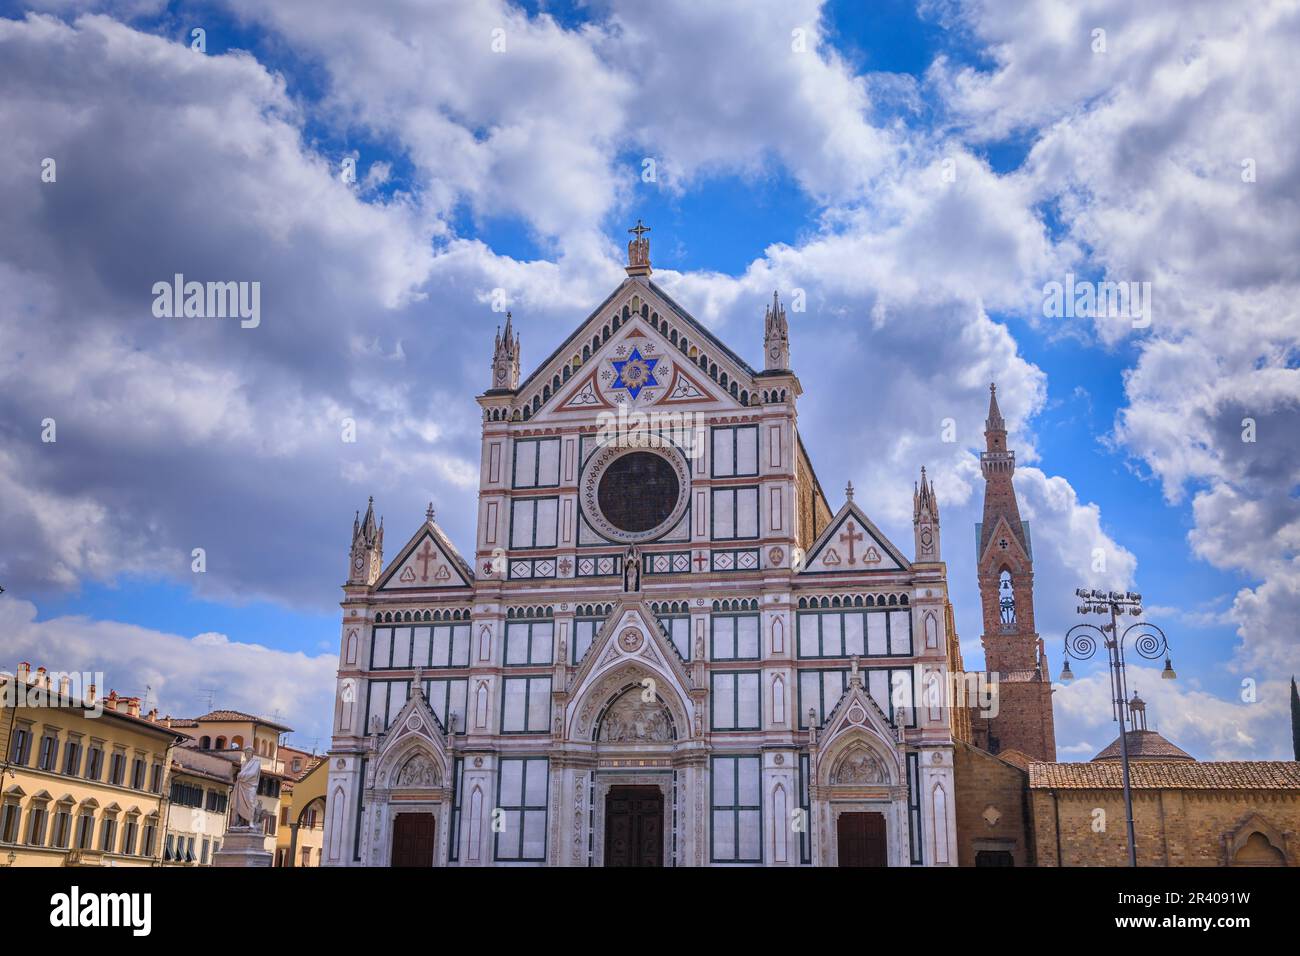 La Basilica della Santa Croce, capolavoro francescano di Firenze: Vista della facciata gotica revival. Foto Stock